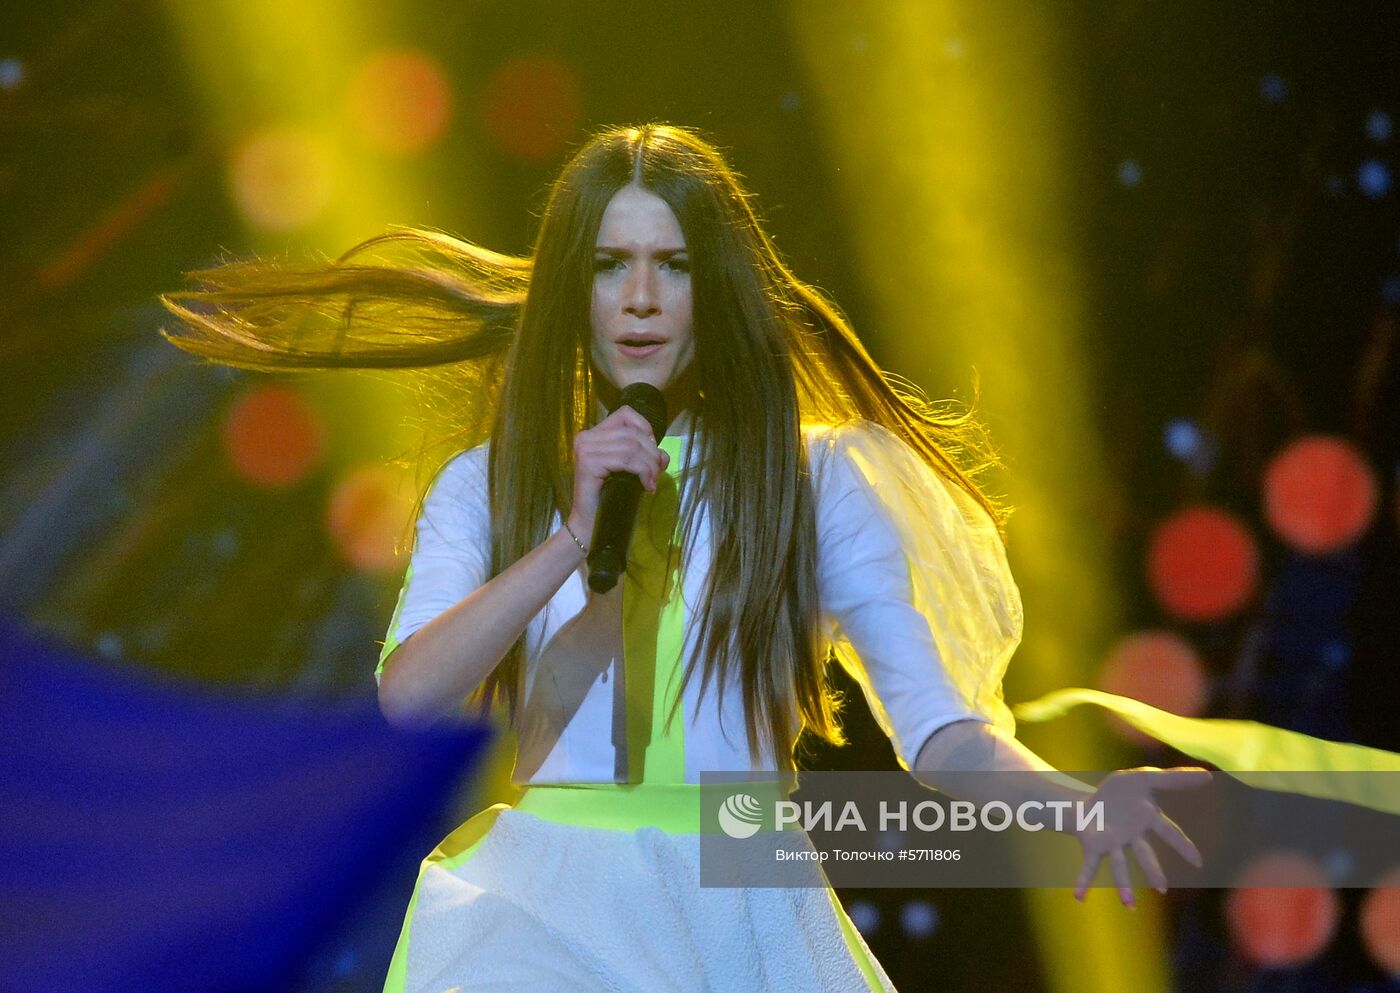 Финал детского конкурса песни "Евровидение-2018"